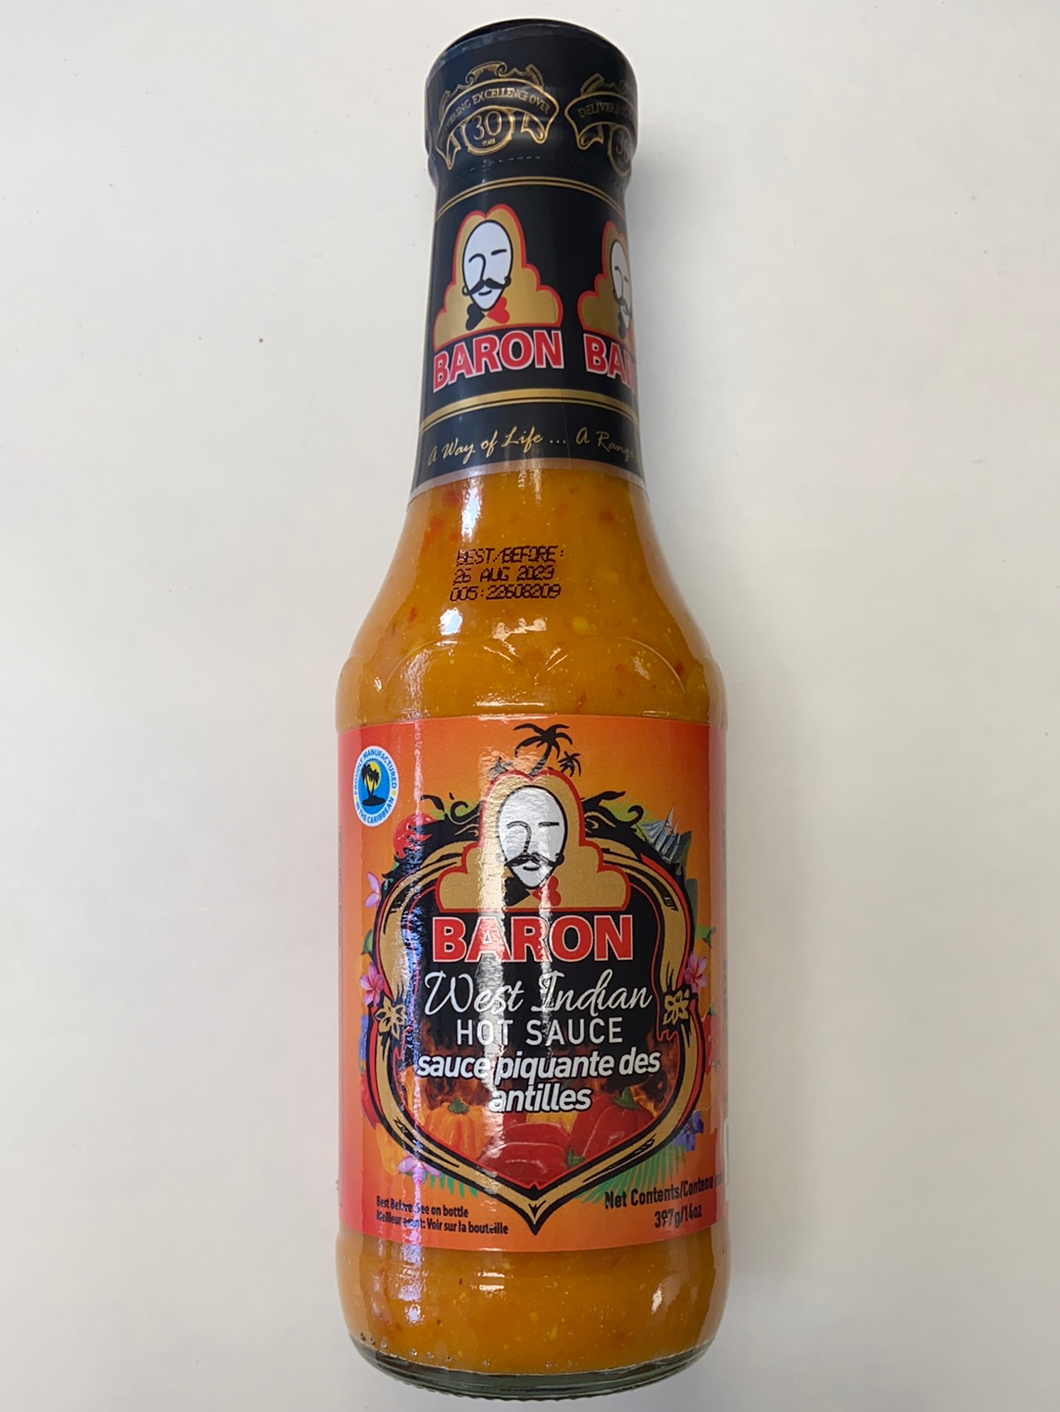 West Indian Hot Sauce, Baron